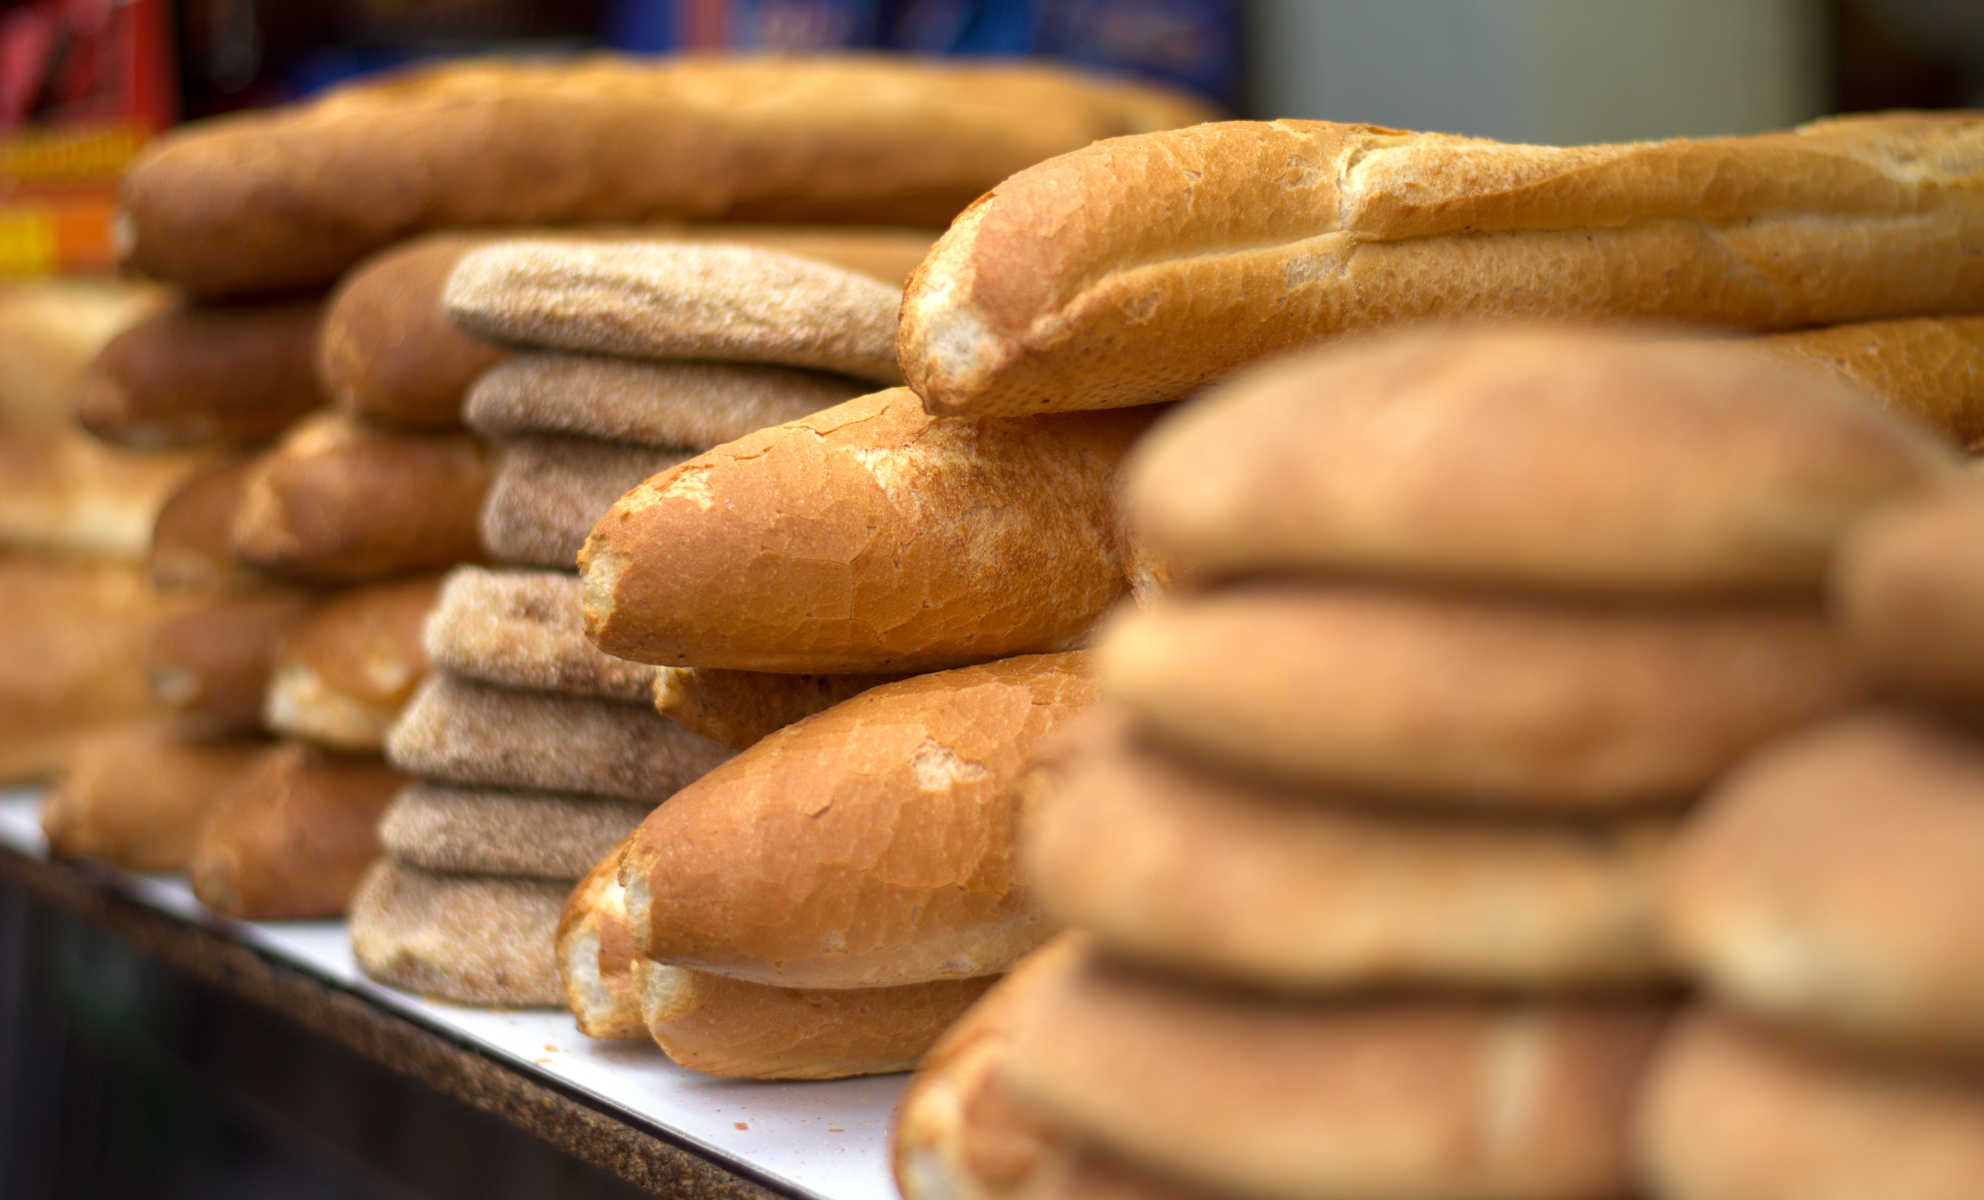 بعد البطاطا والحليب.. سعر الخبز يثير جدلا واسعا في الجزائر